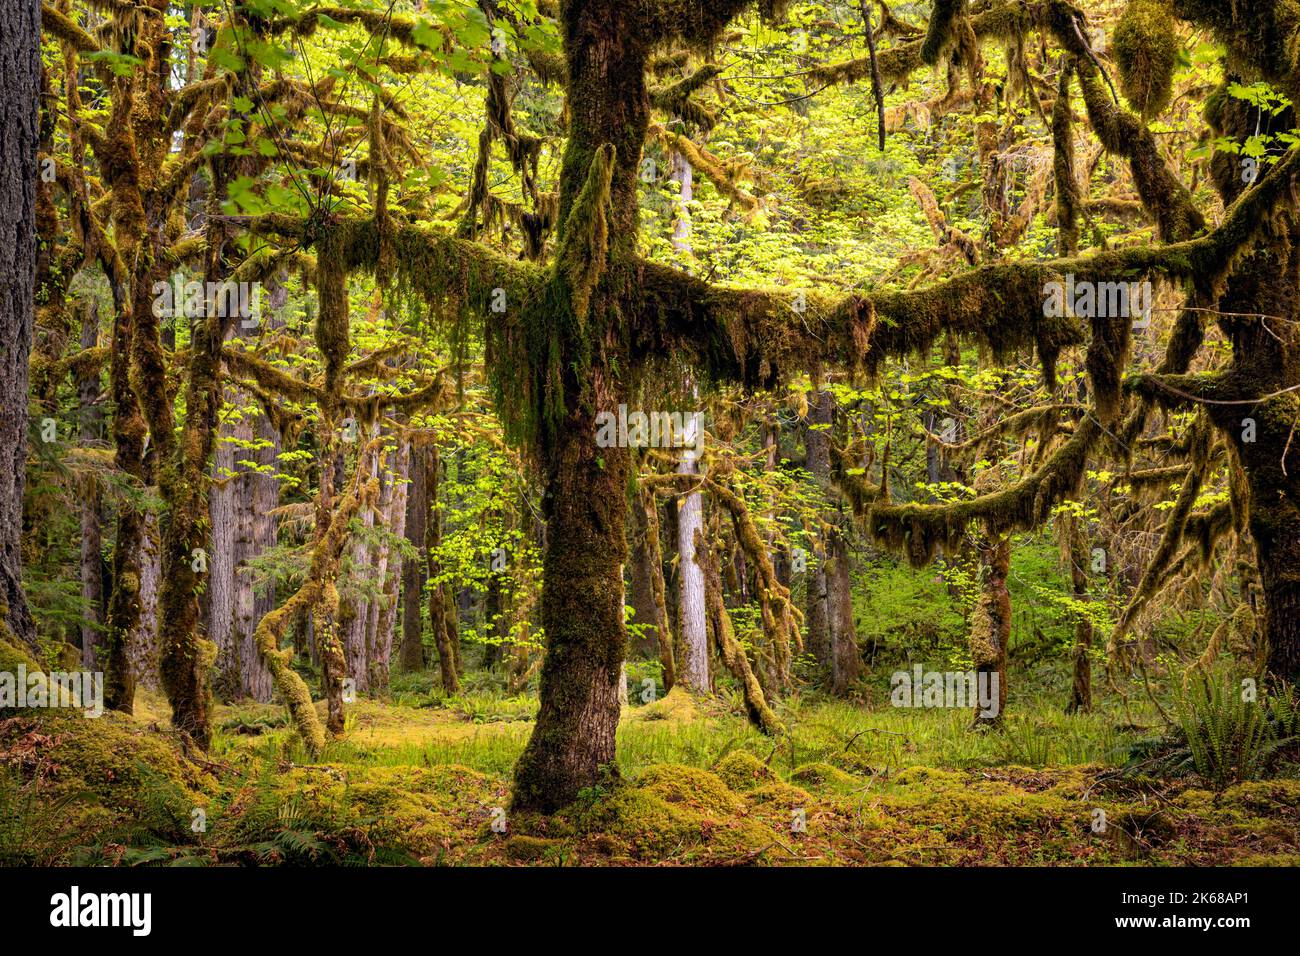 WA22230-00...WASHINGTON - Moss coperta Big Leaf Acero alberi e muschio coperta foresta pavimento nella foresta pluviale Quinault nel Parco Nazionale Olimpico. Foto Stock